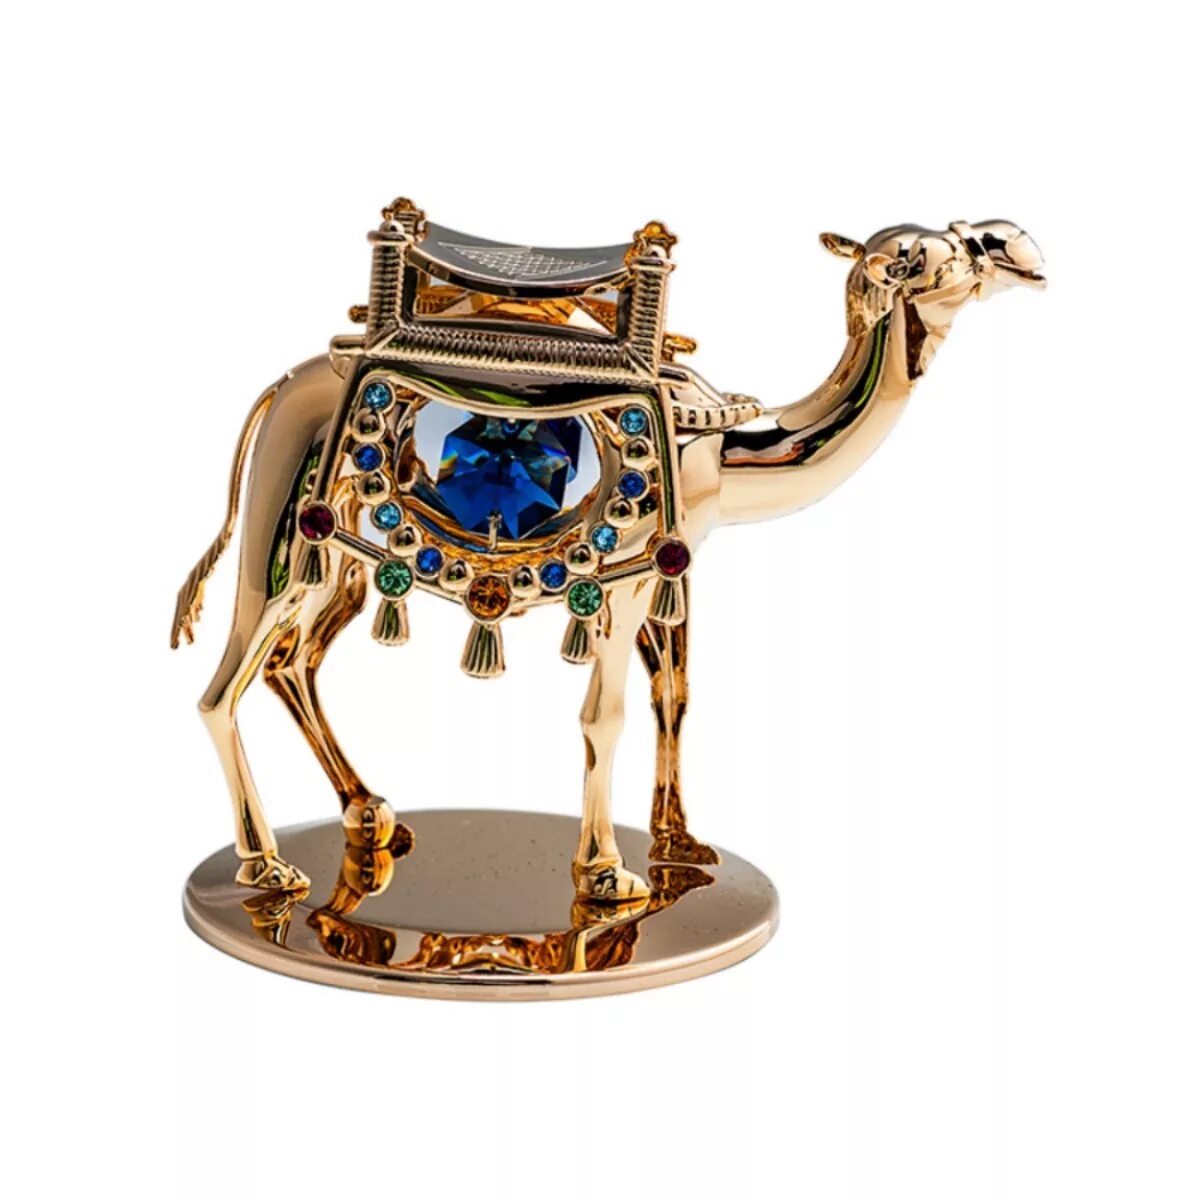 Сувенирное золото. Сувенир верблюд из Дубая. Верблюд сувенир Дубай. Дорогие сувениры с верблюдом. Верблюд золотой сувенир.